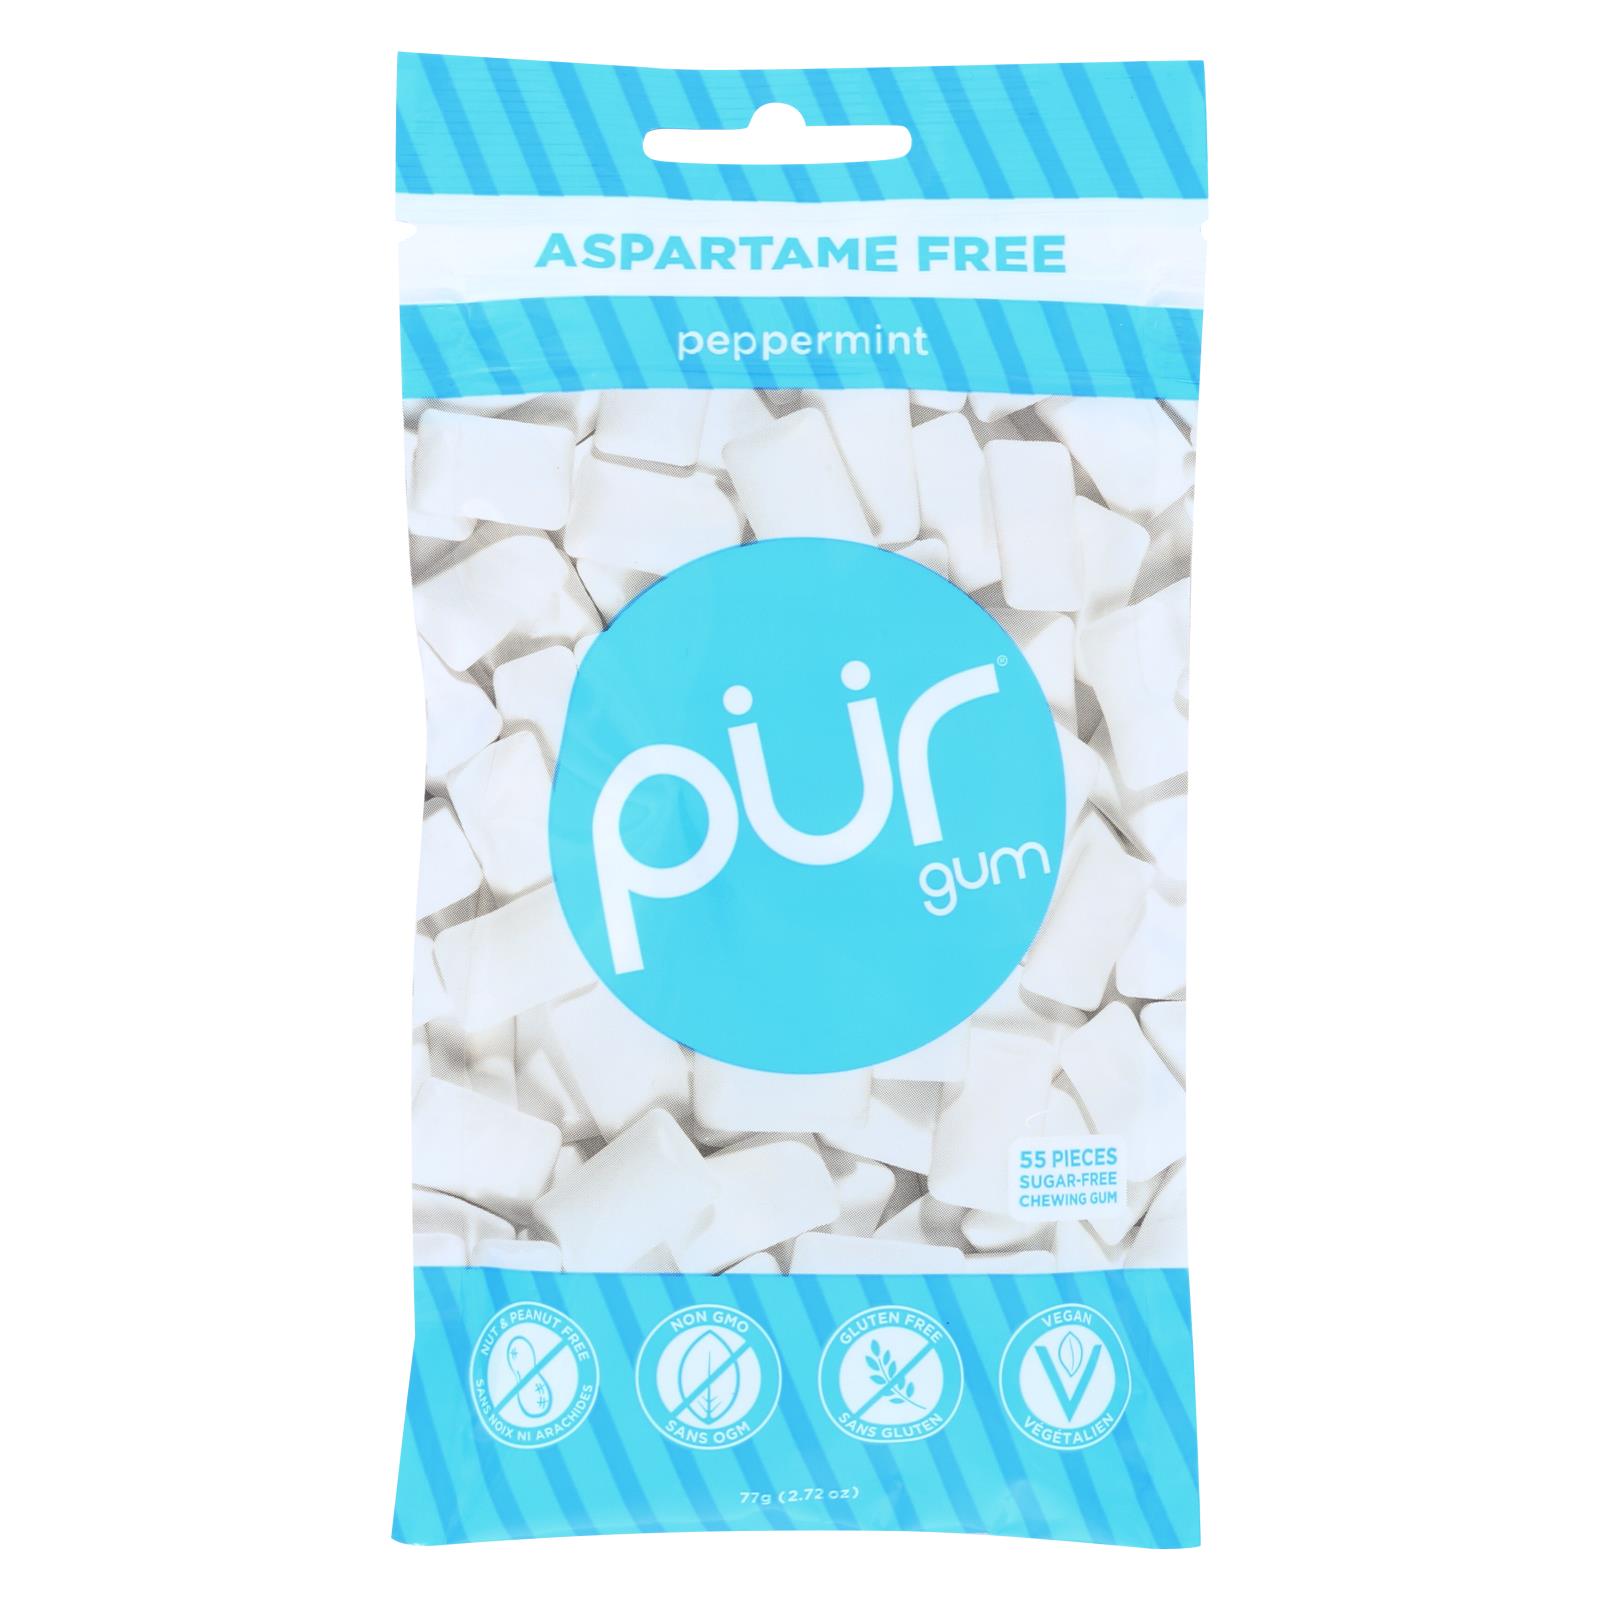 Pur Peppermint Gum - 12개 묶음상품 - 2.72 OZ